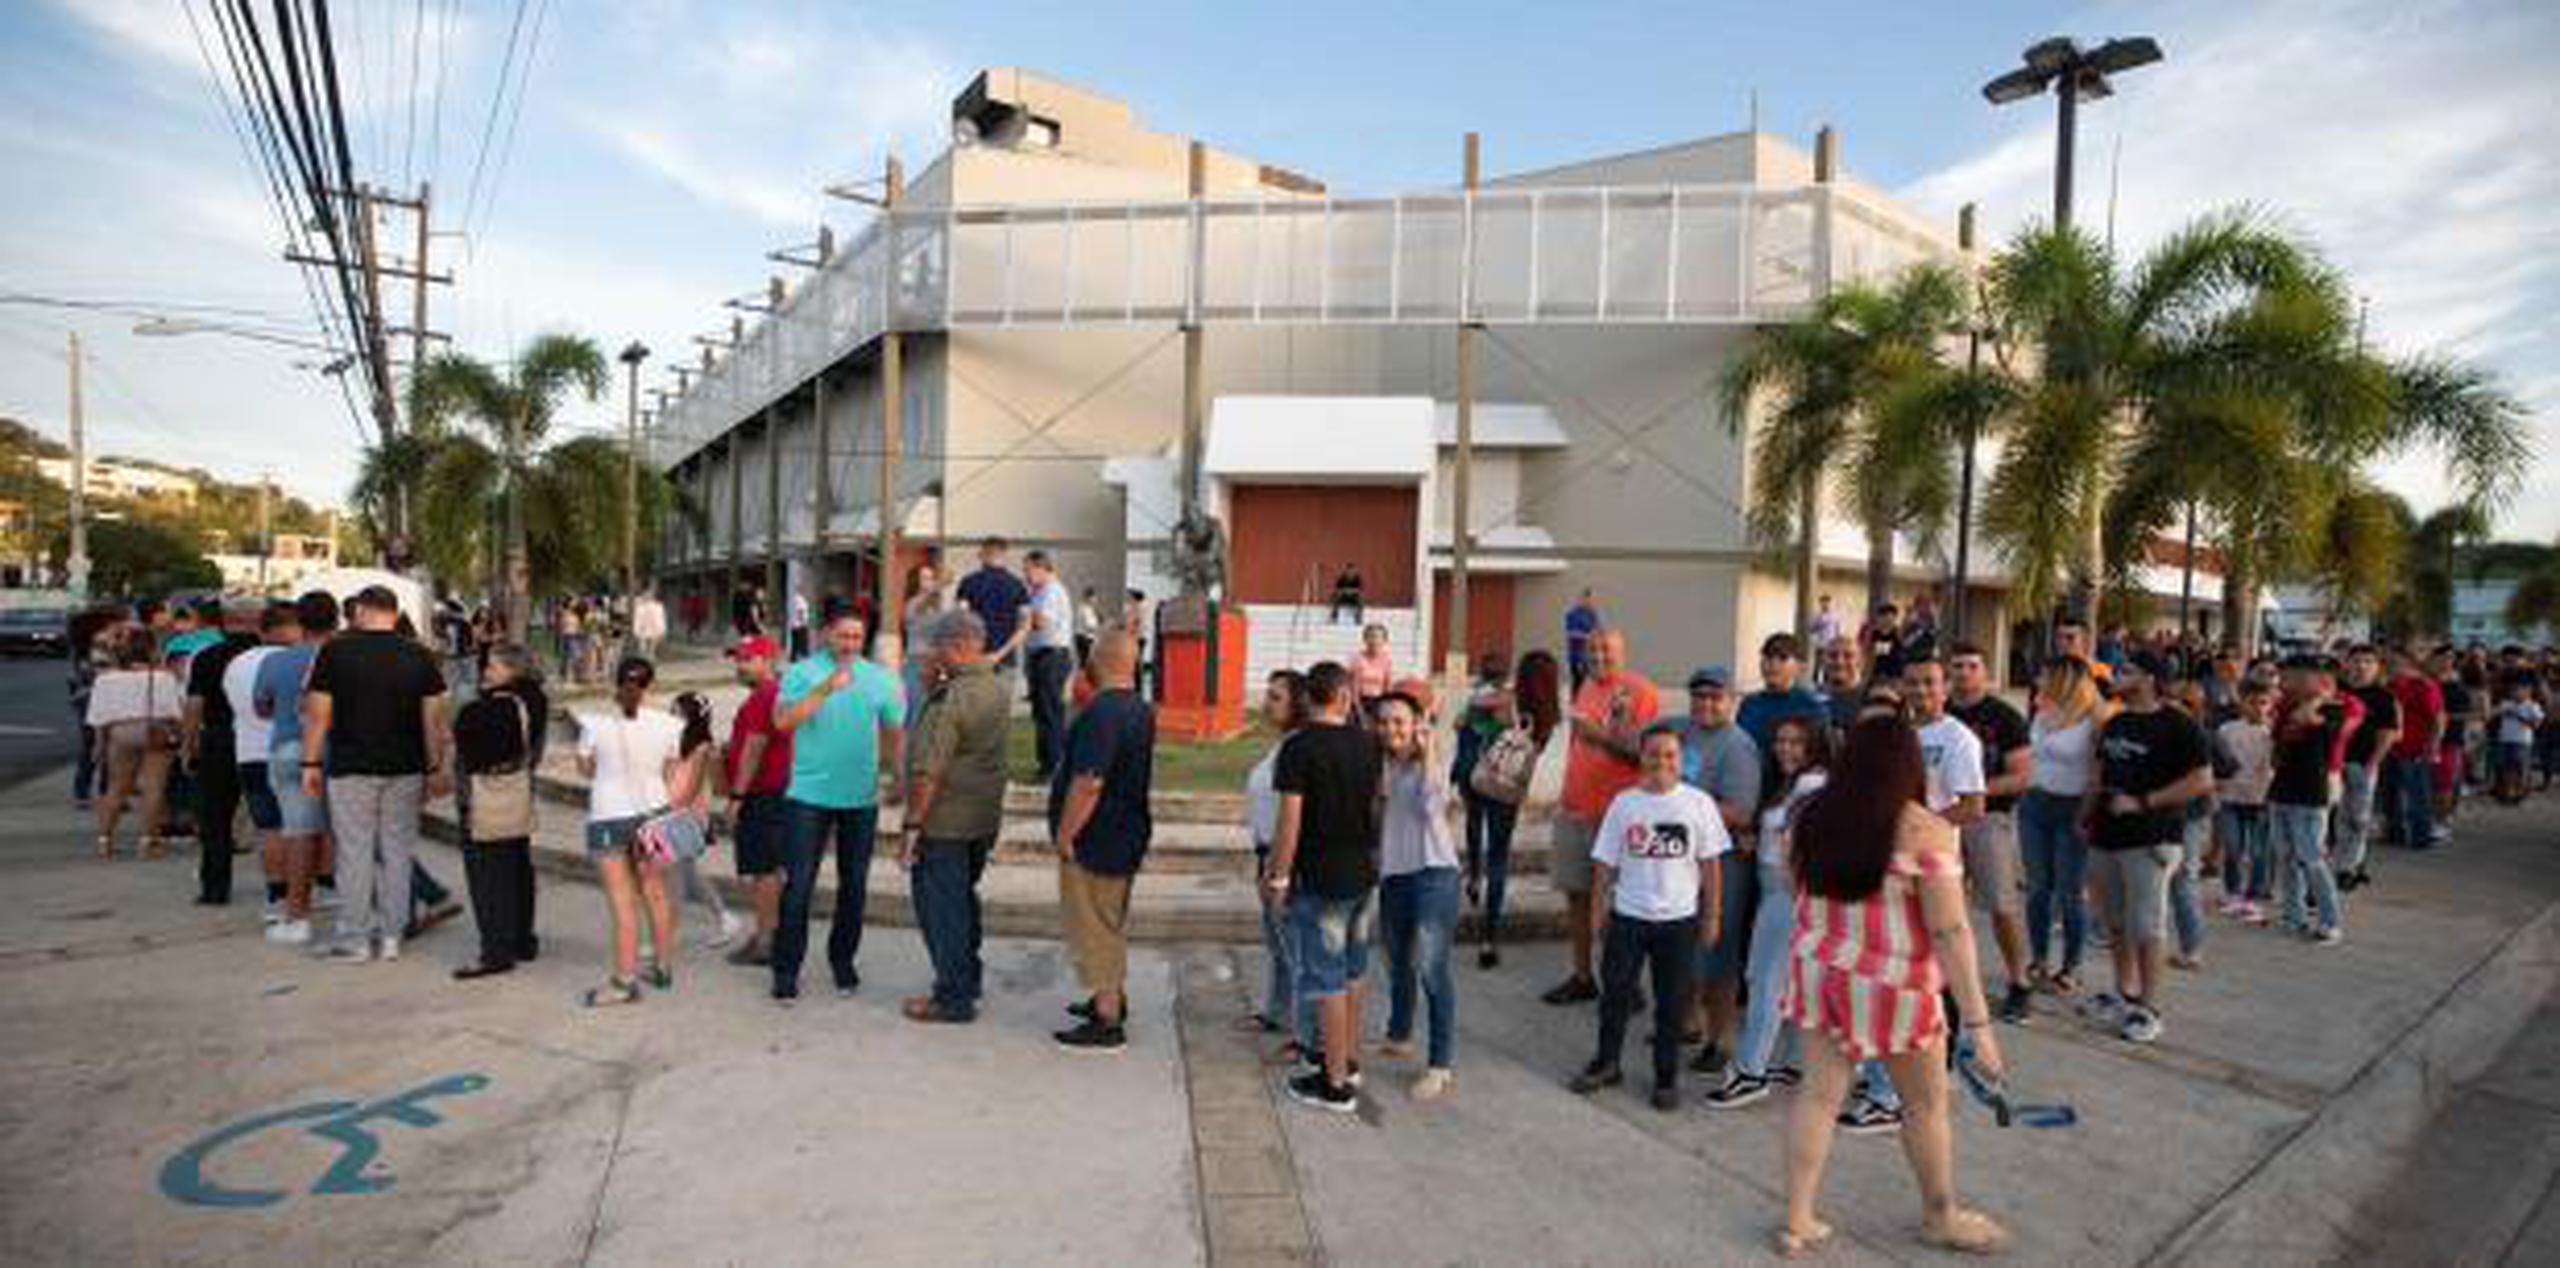 Desde antes de la 1:00 de la tarde, ya había decenas de personas haciendo fila parta conseguir un boleto. (Para Primera Hora / Jorge A. Ramírez Portela)